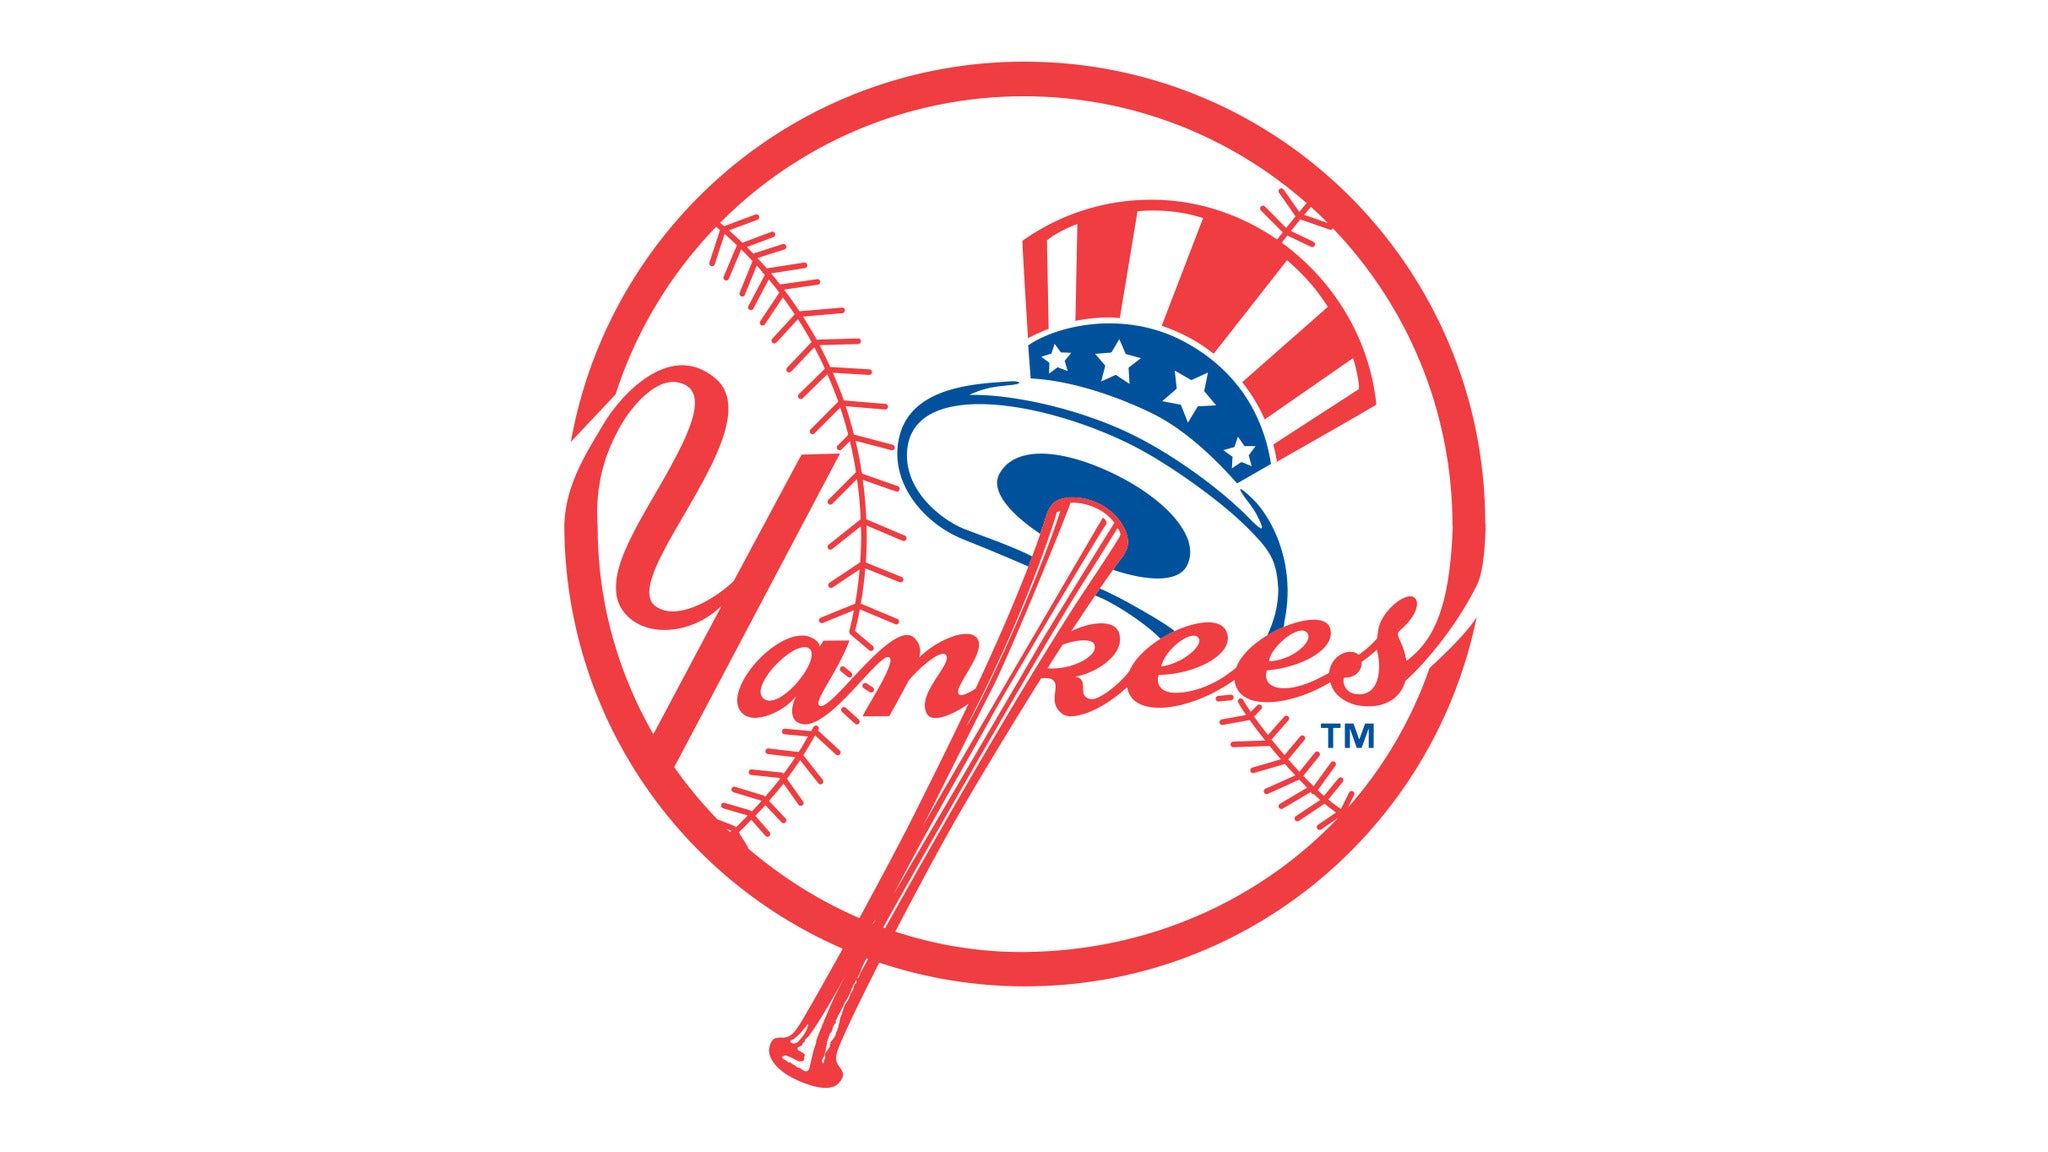 New York Yankees v. Chicago White Sox